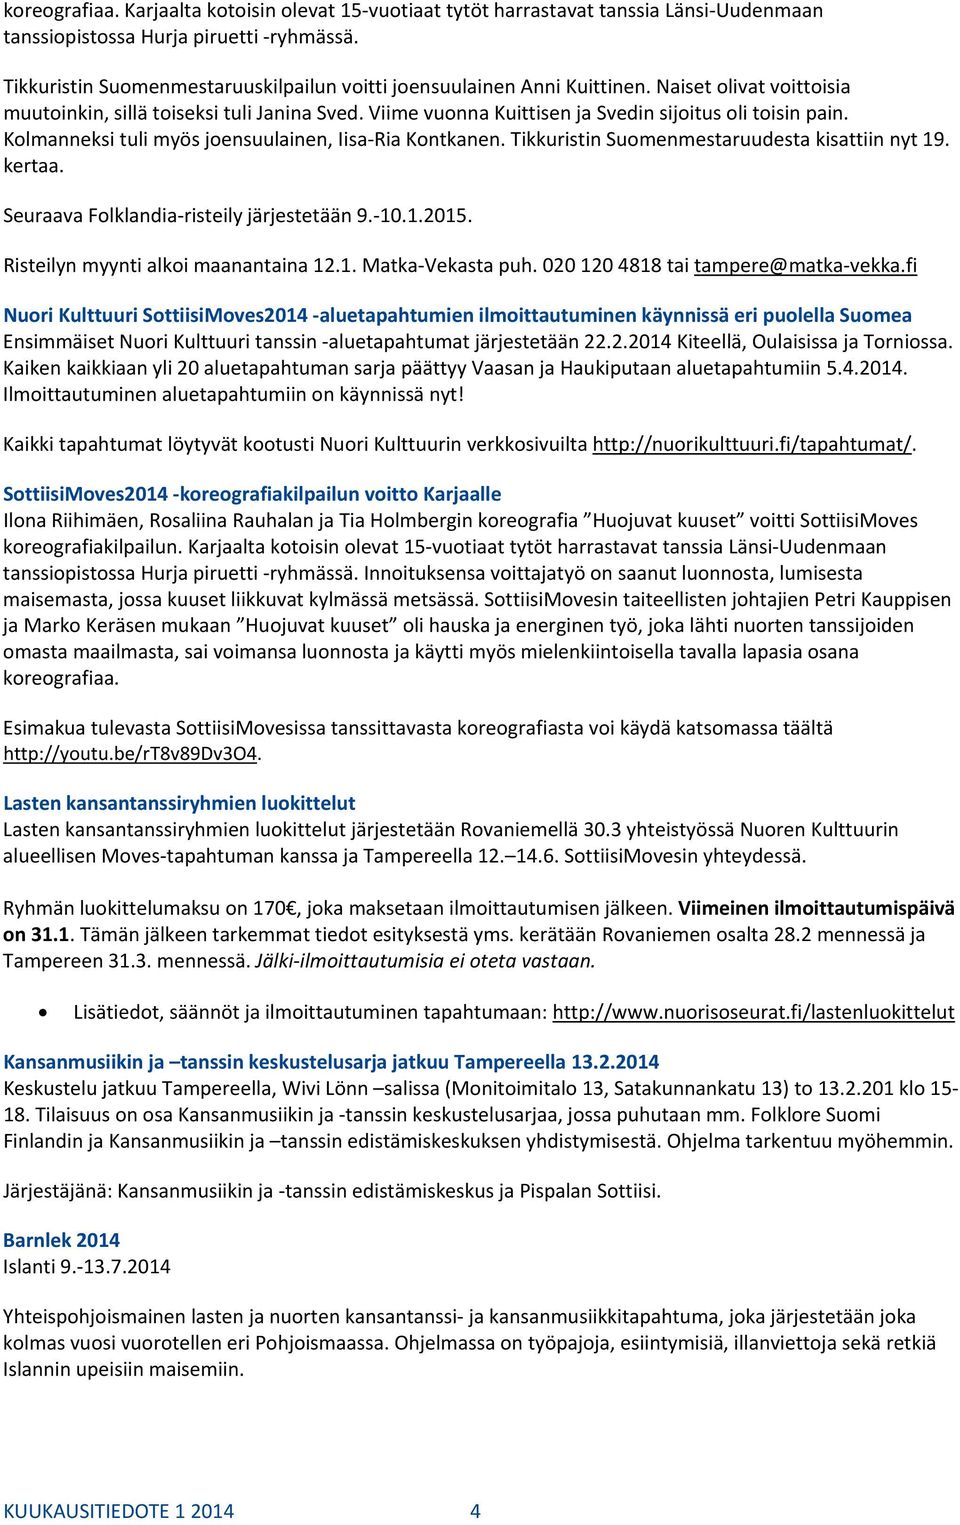 Viime vuonna Kuittisen ja Svedin sijoitus oli toisin pain. Kolmanneksi tuli myös joensuulainen, Iisa Ria Kontkanen. Tikkuristin Suomenmestaruudesta kisattiin nyt 19. kertaa.